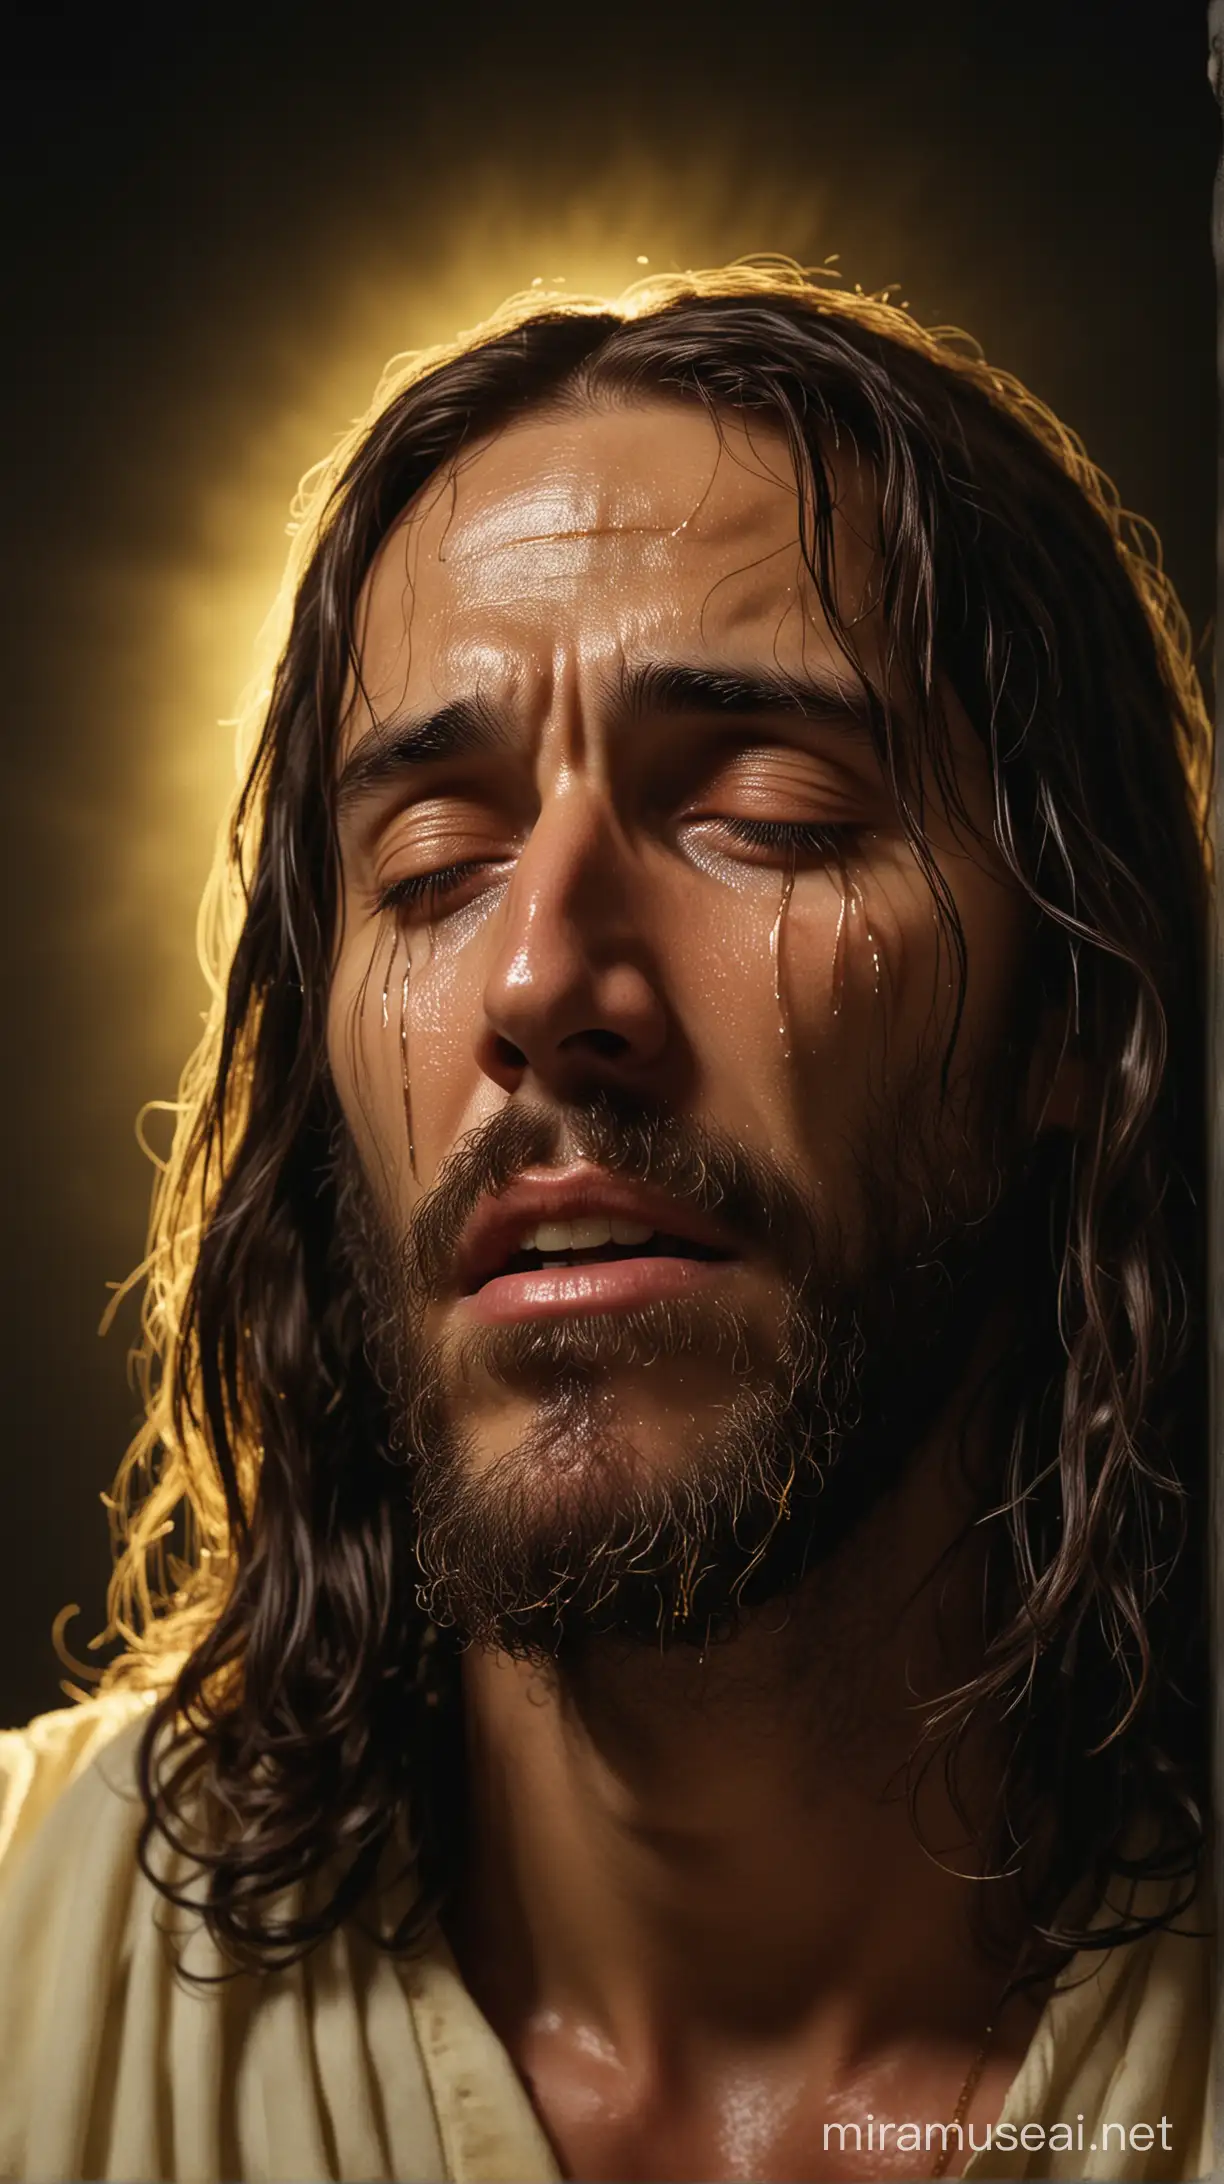  حضرت عیسی، در حال گریه و اشک ریختن، پس زمینه تاریک و نور زرد